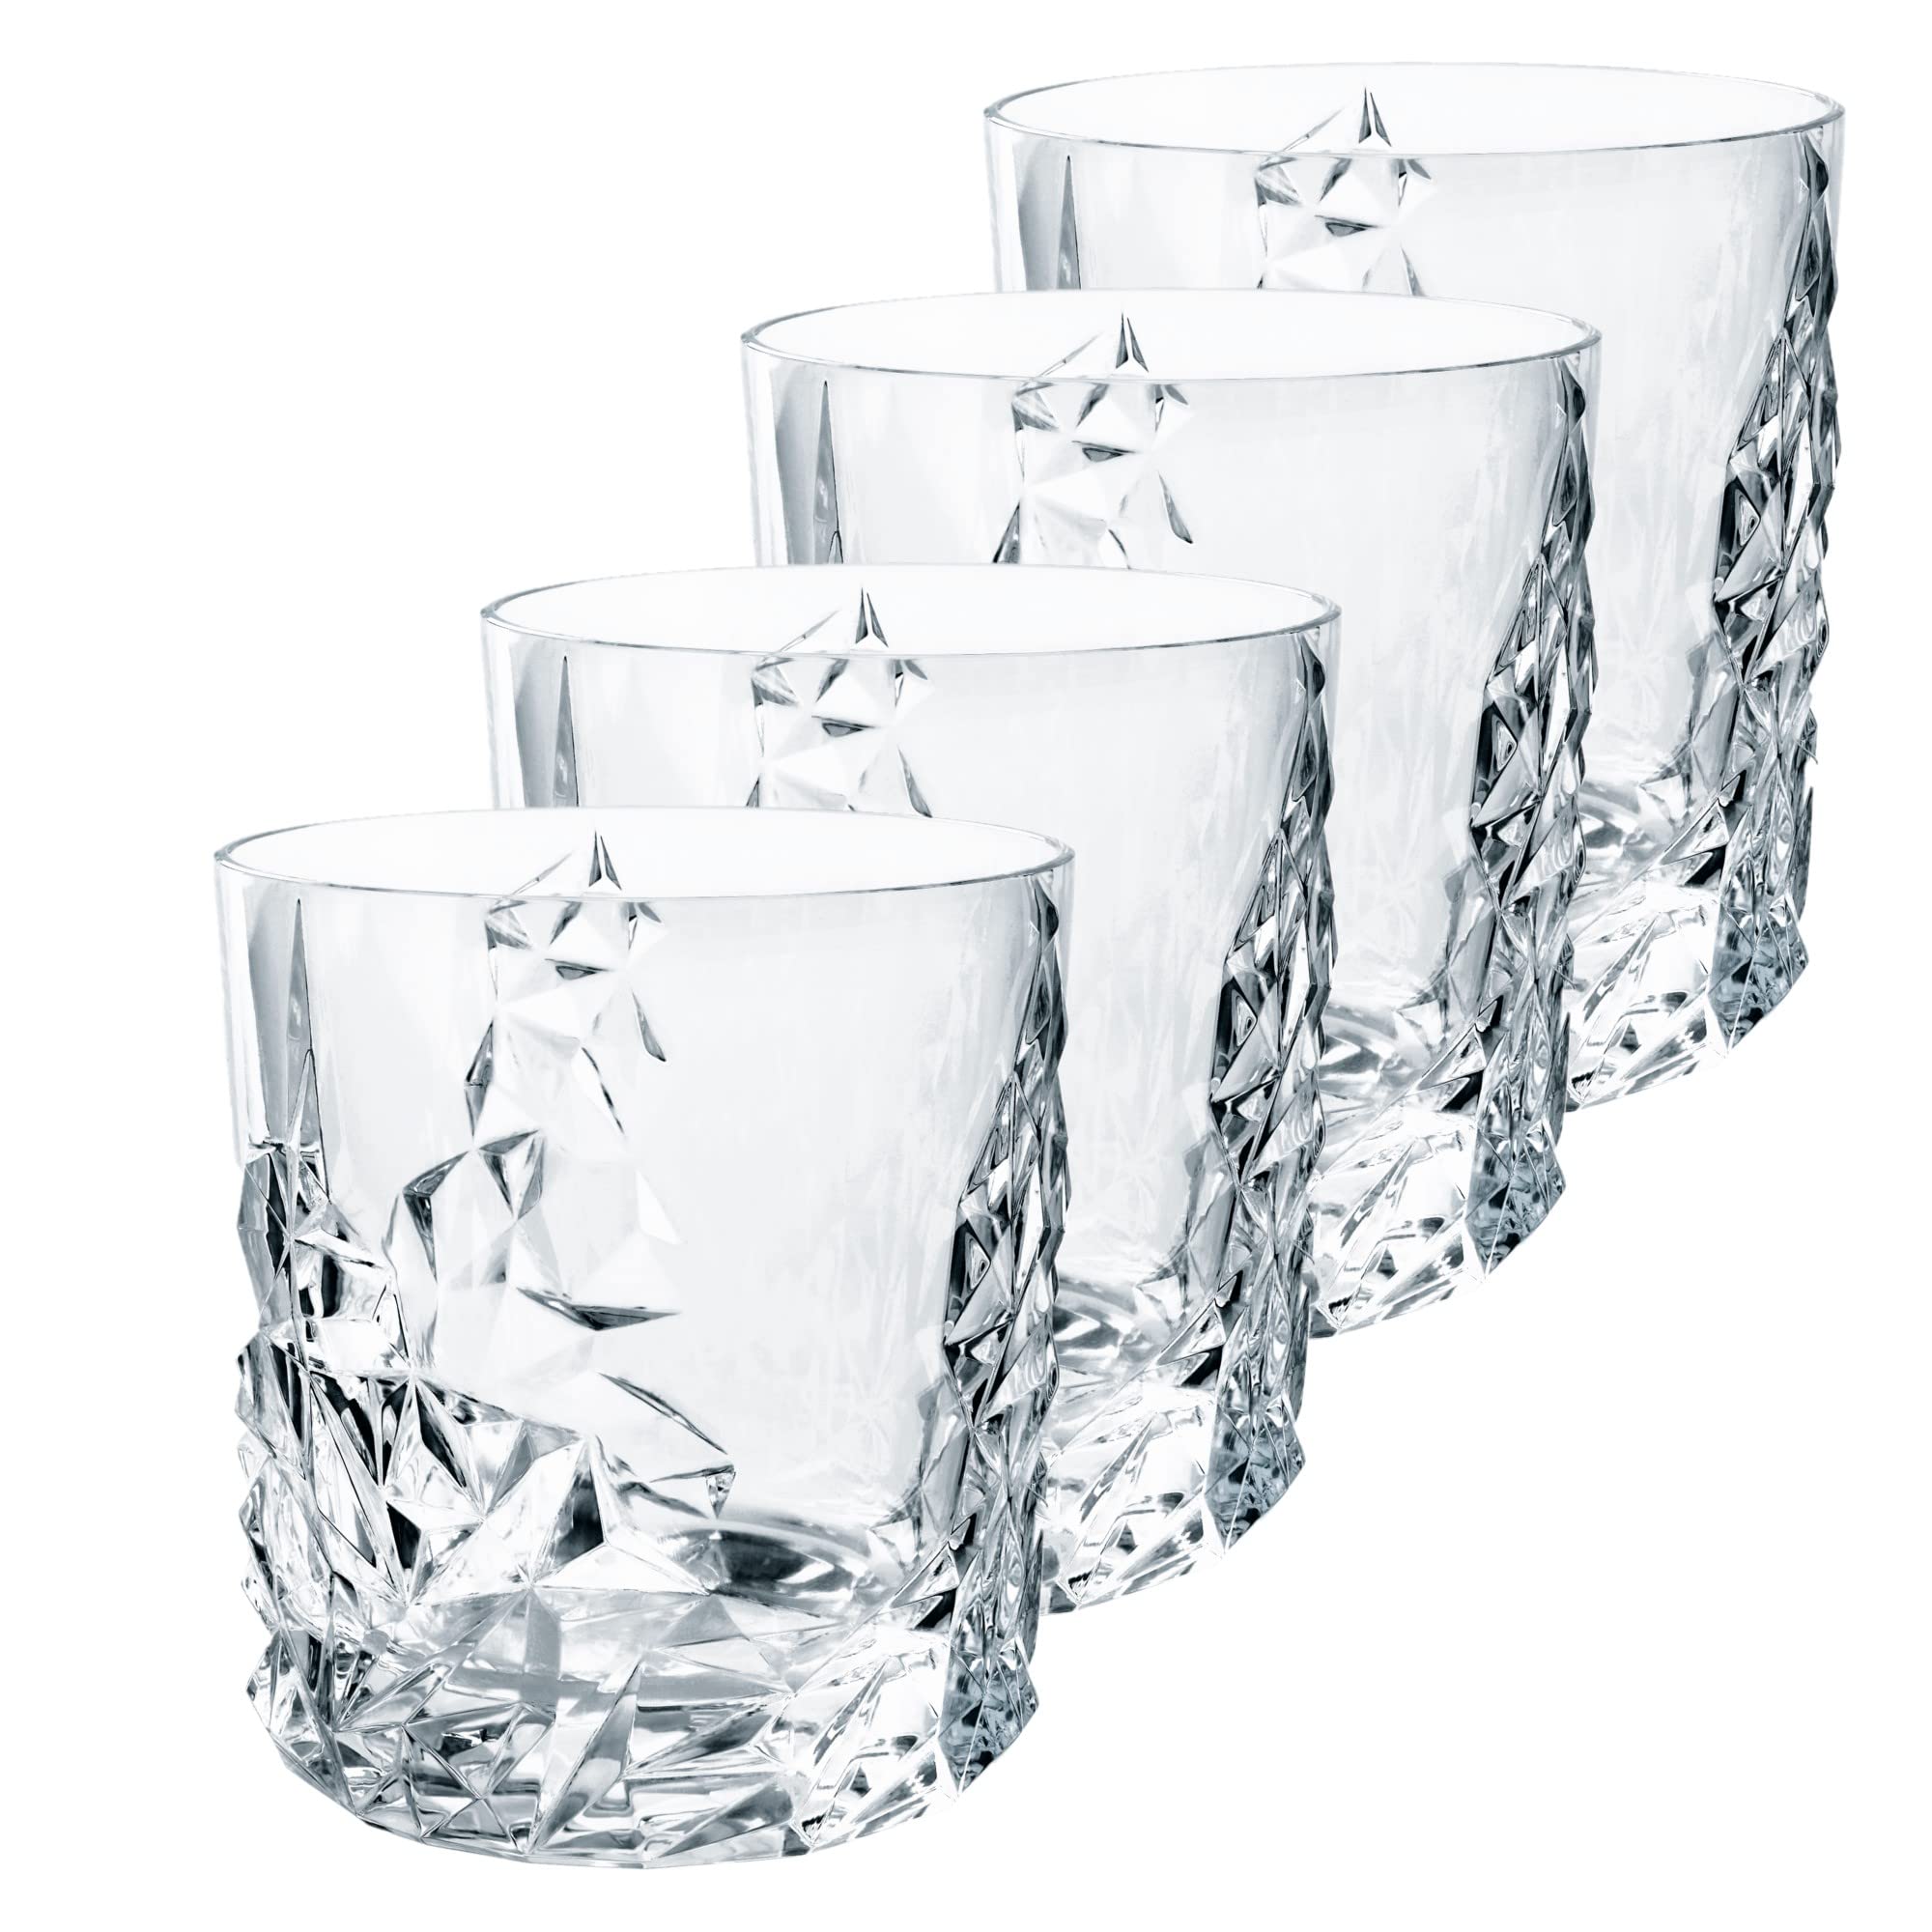 escompte élevé Spiegelau & Nachtmann Ensemble de 4 verres à whisky Lot de 4 verres à whisky Cristal transparent. xvmBBXCDx véritable contre